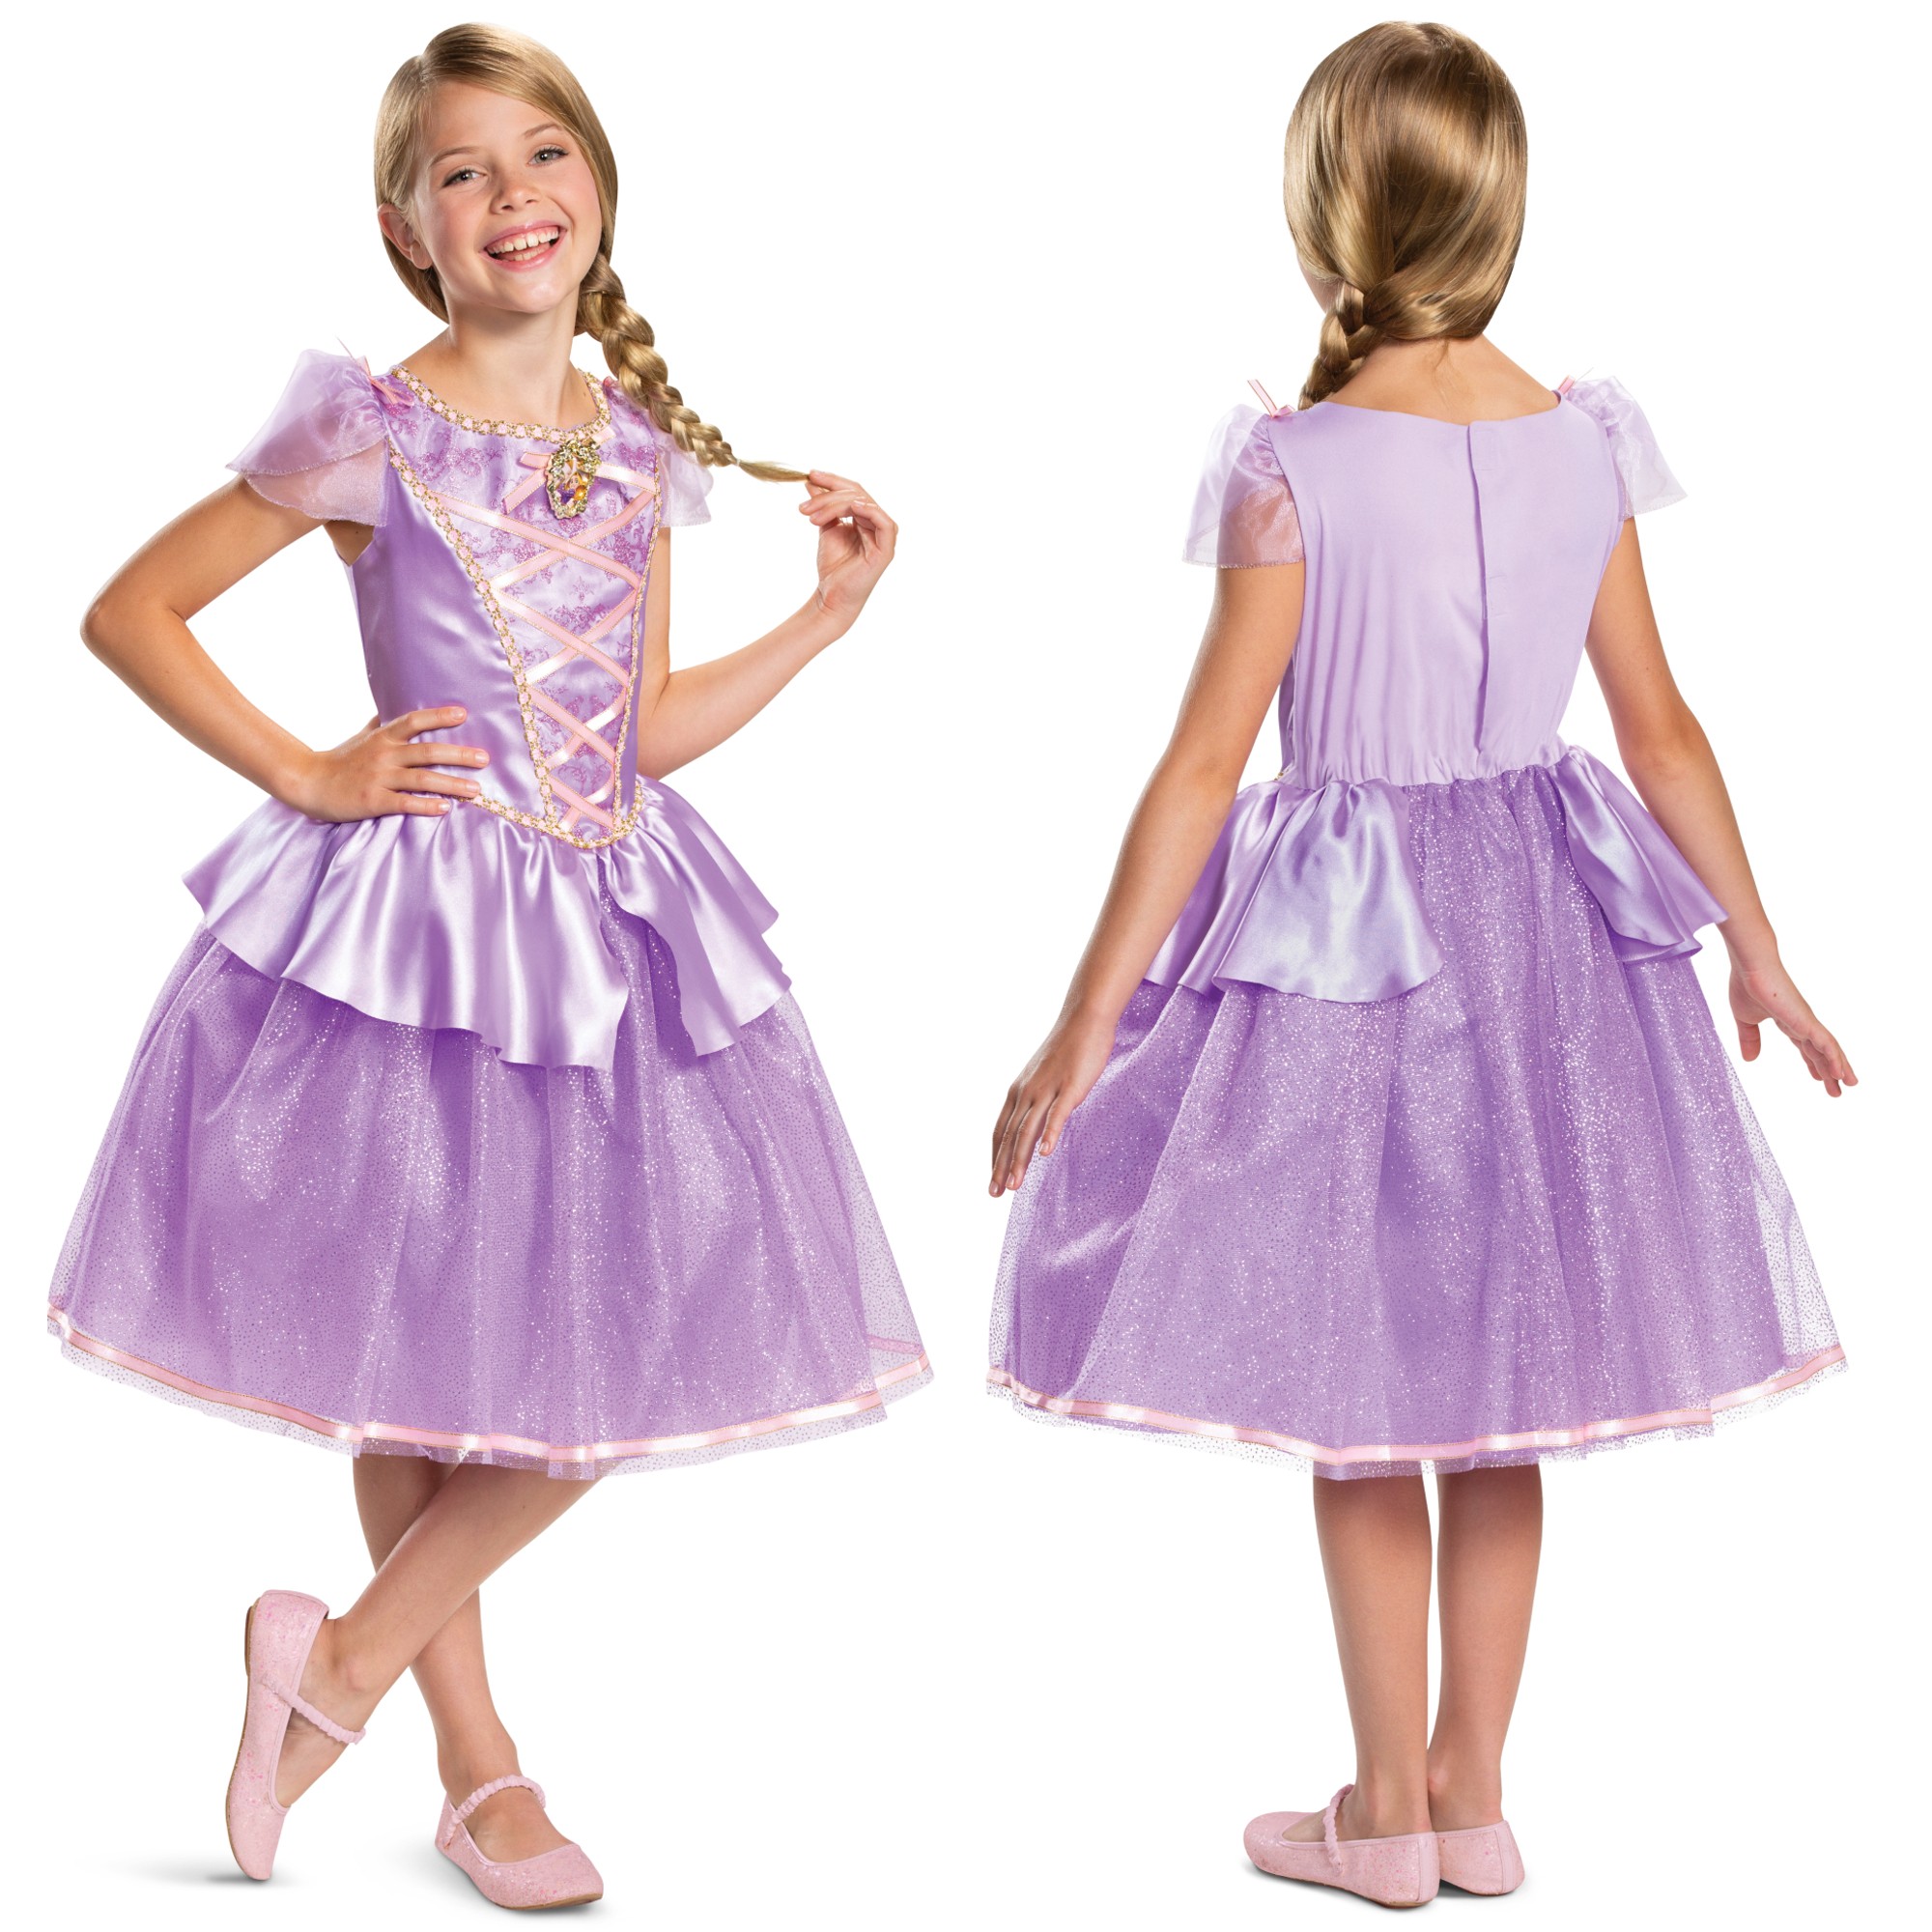 Strj karnawaowy Disney dla dziewczynki Roszpunka kostium przebranie 110-122 cm (4-6 lat)